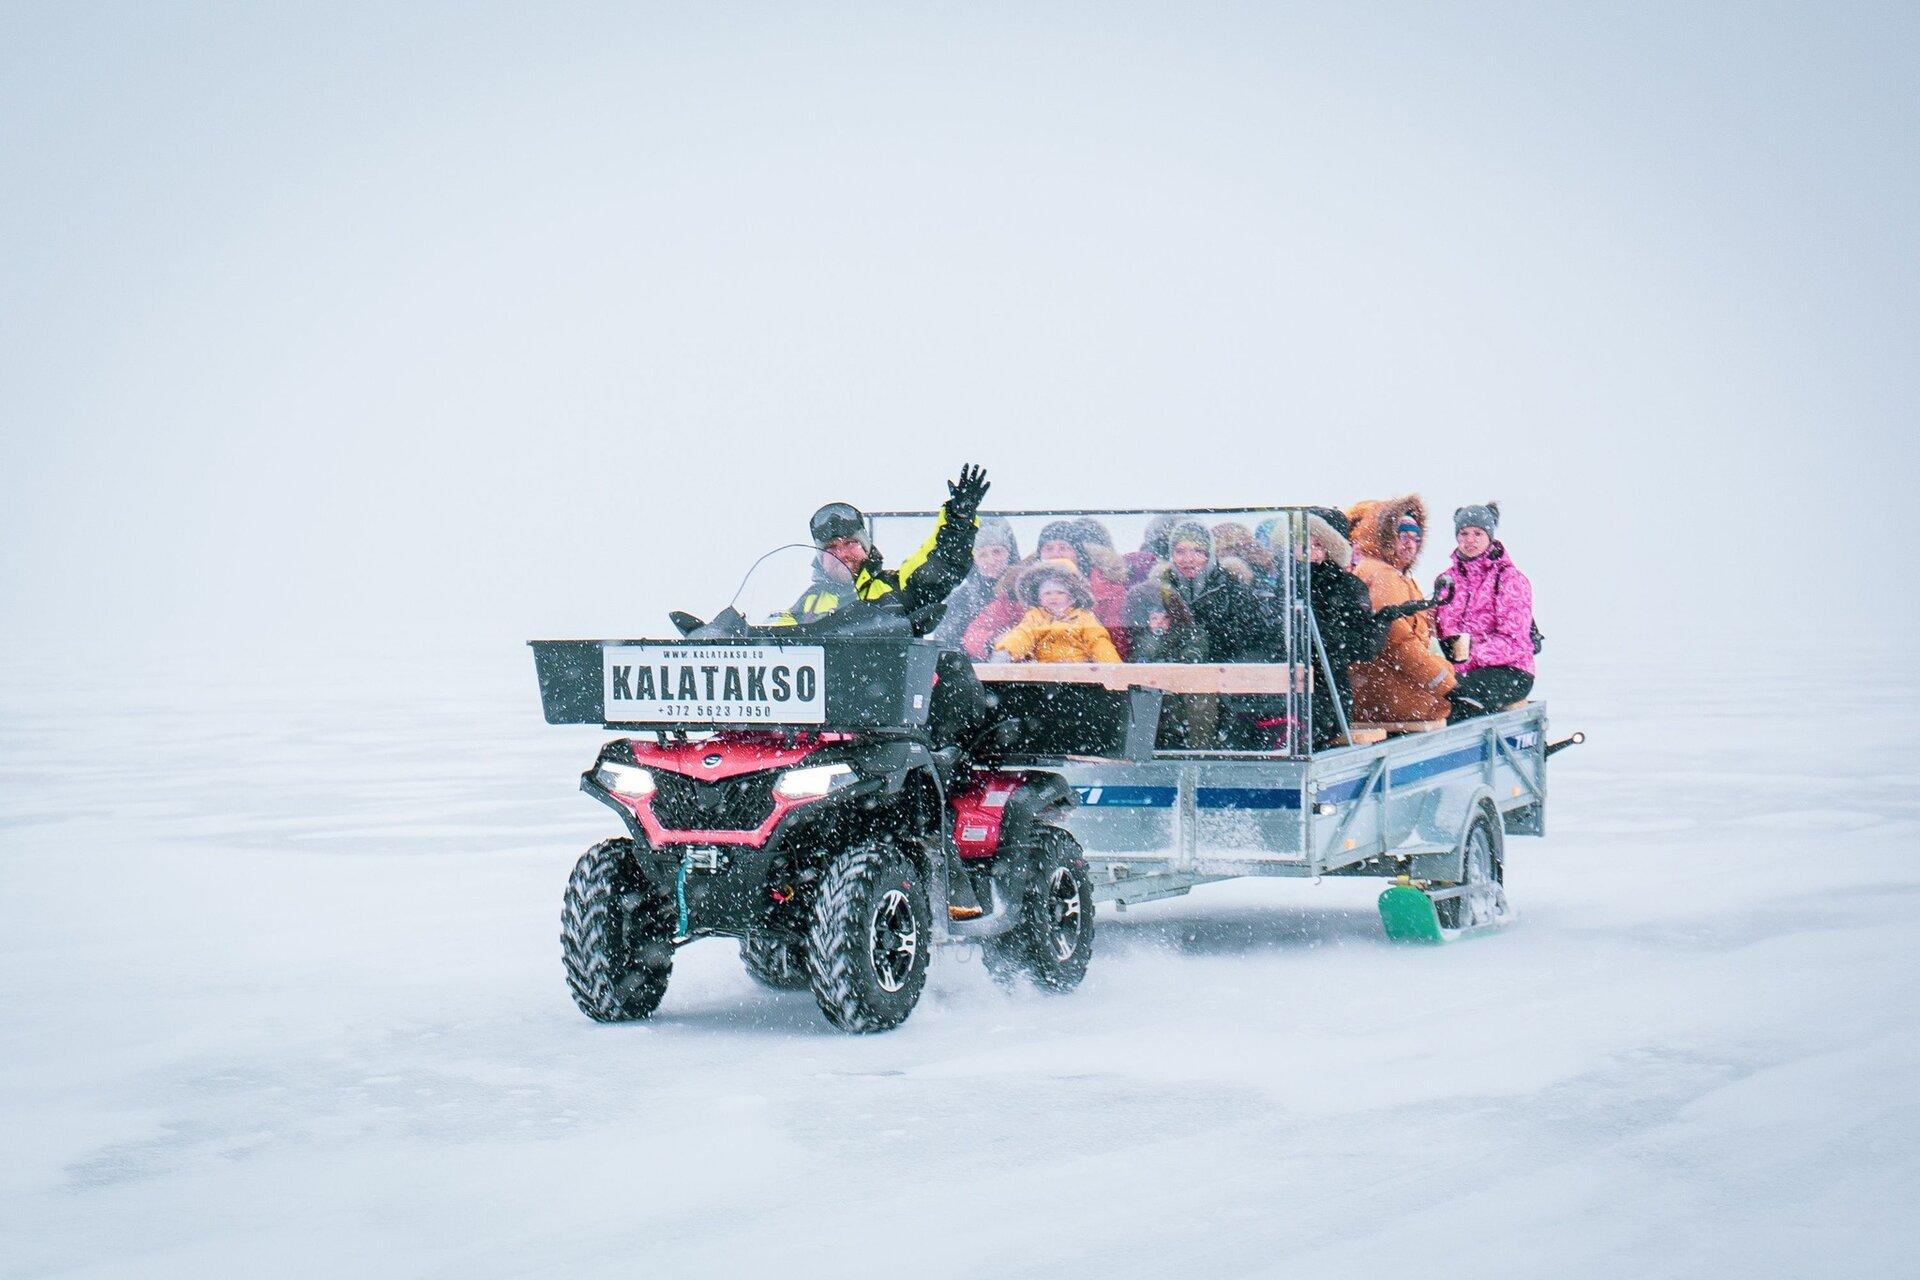 Амфибия - такси для рыбаков на льду Пярнуского залива